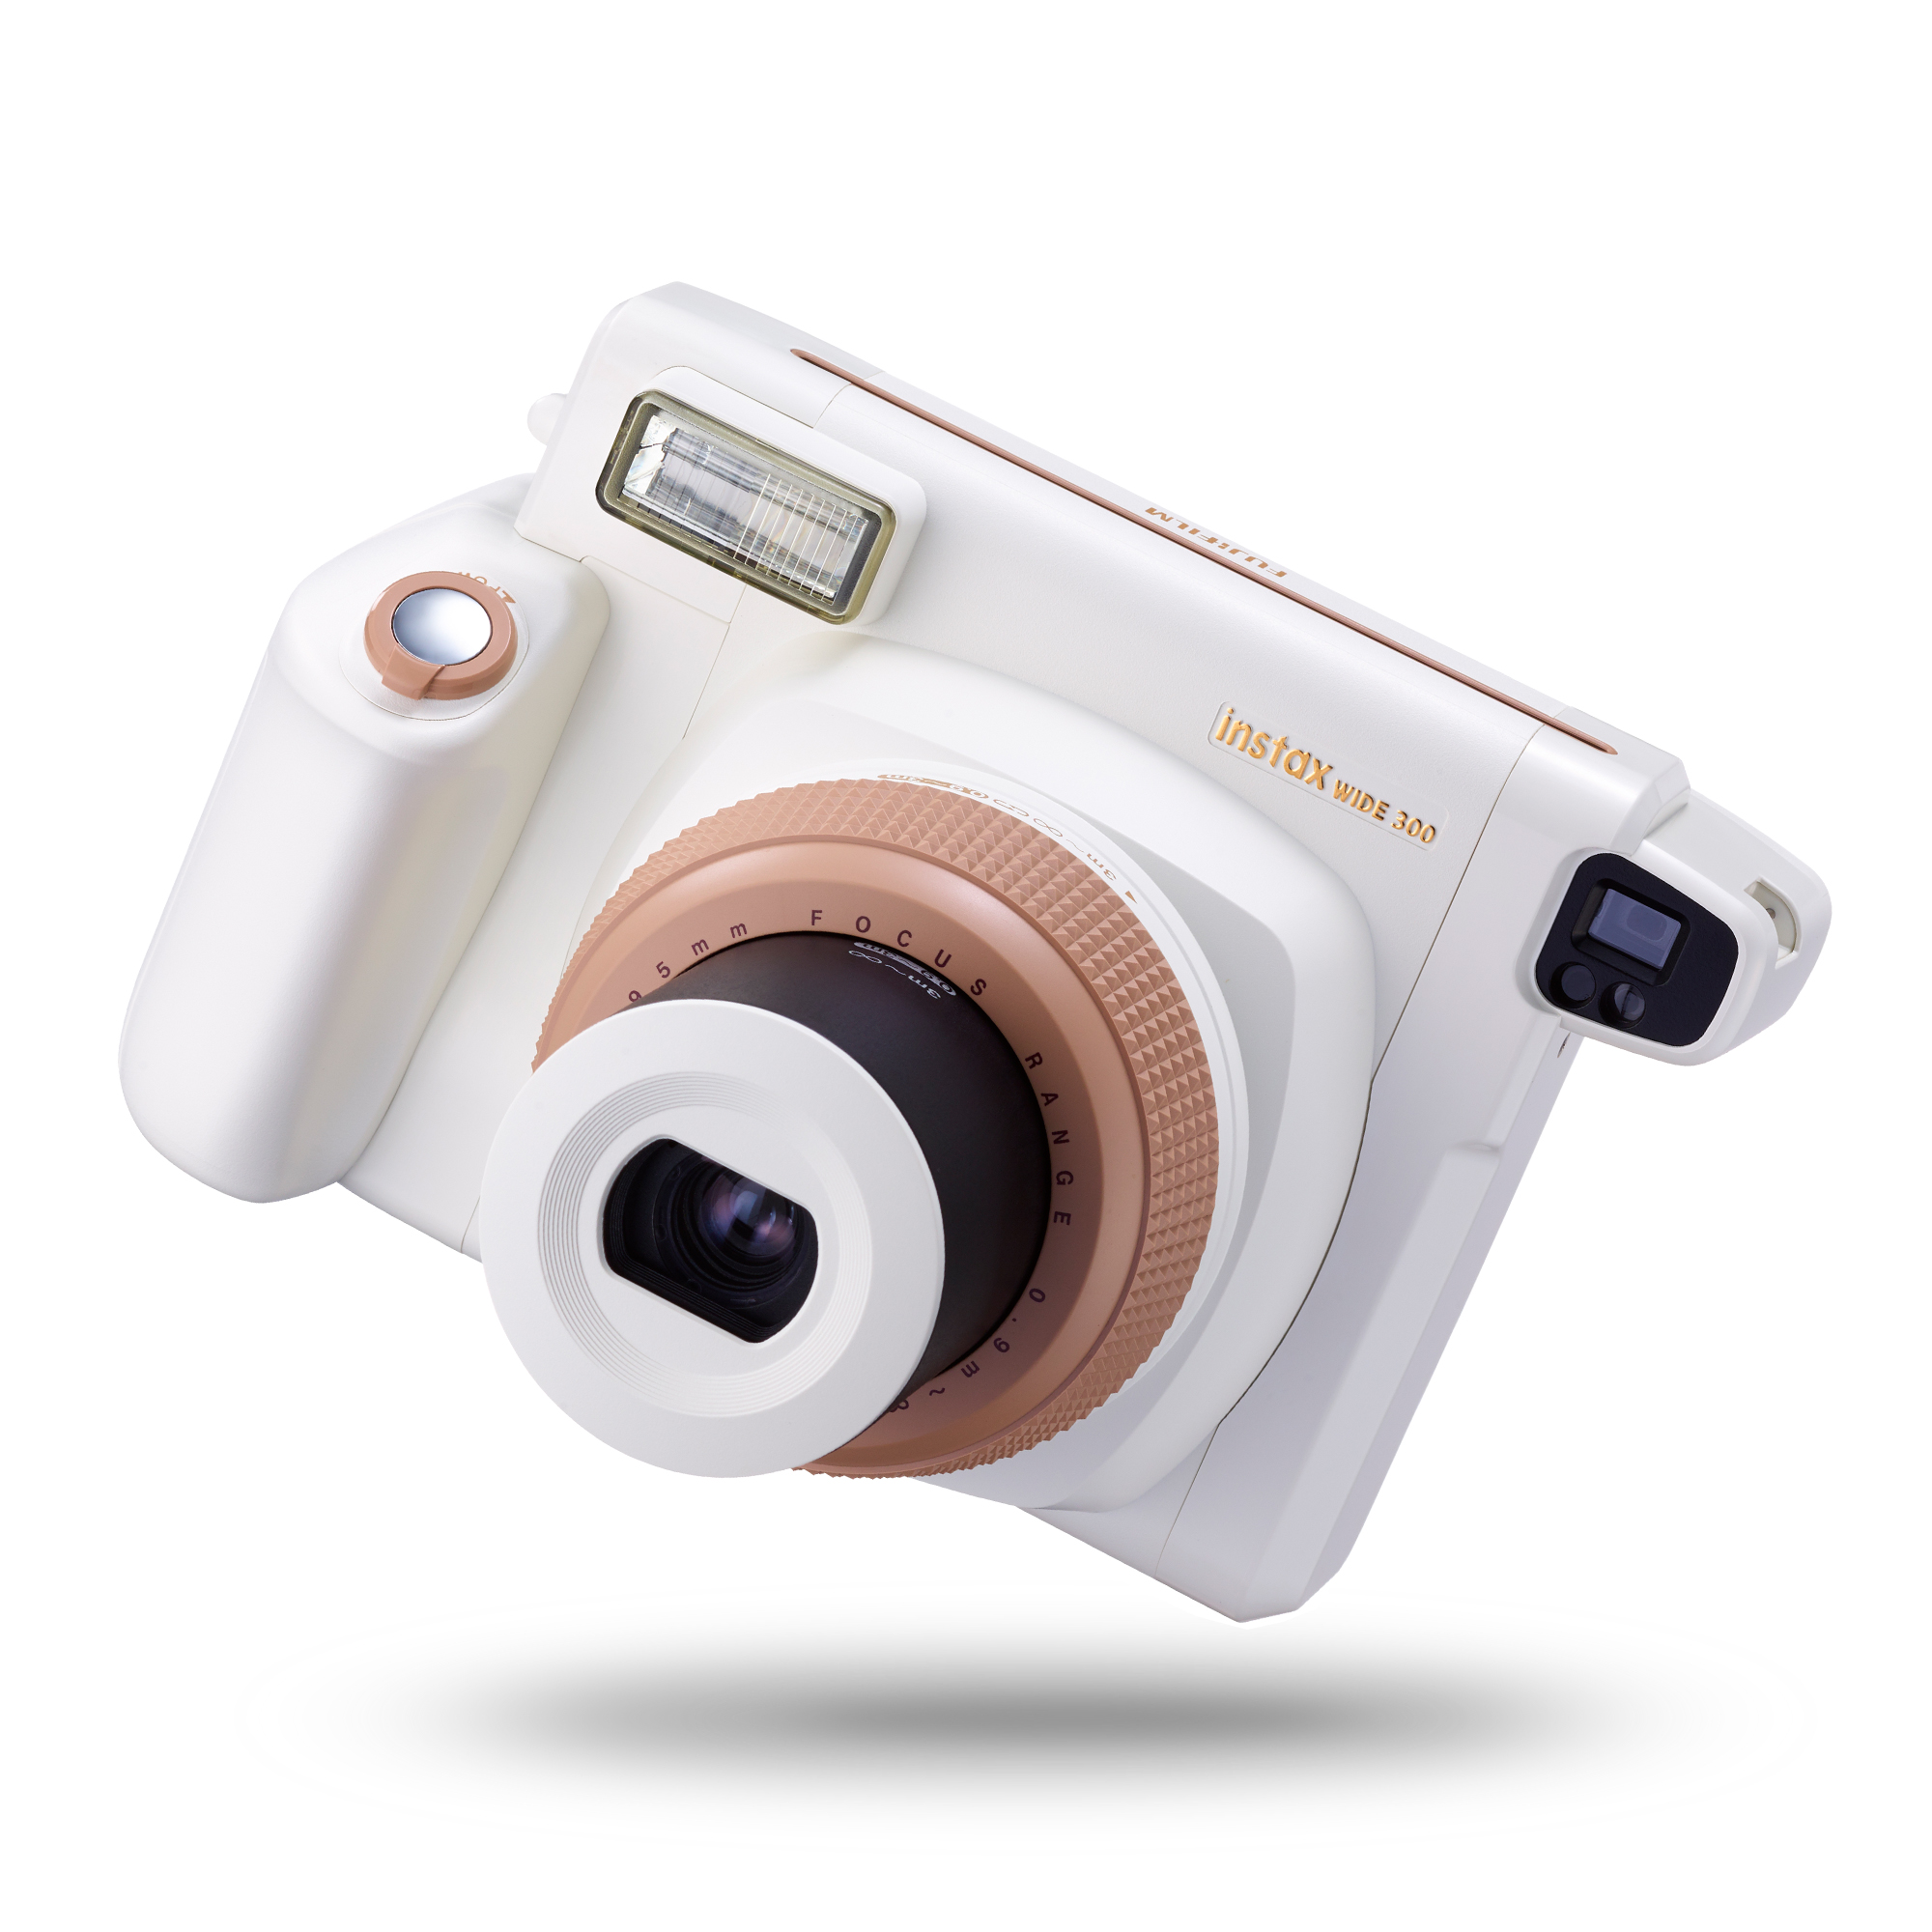 Zuivelproducten samenzwering Ik heb het erkend Fujifilm Instax Wide 300 Instant Film Camera – JG Superstore